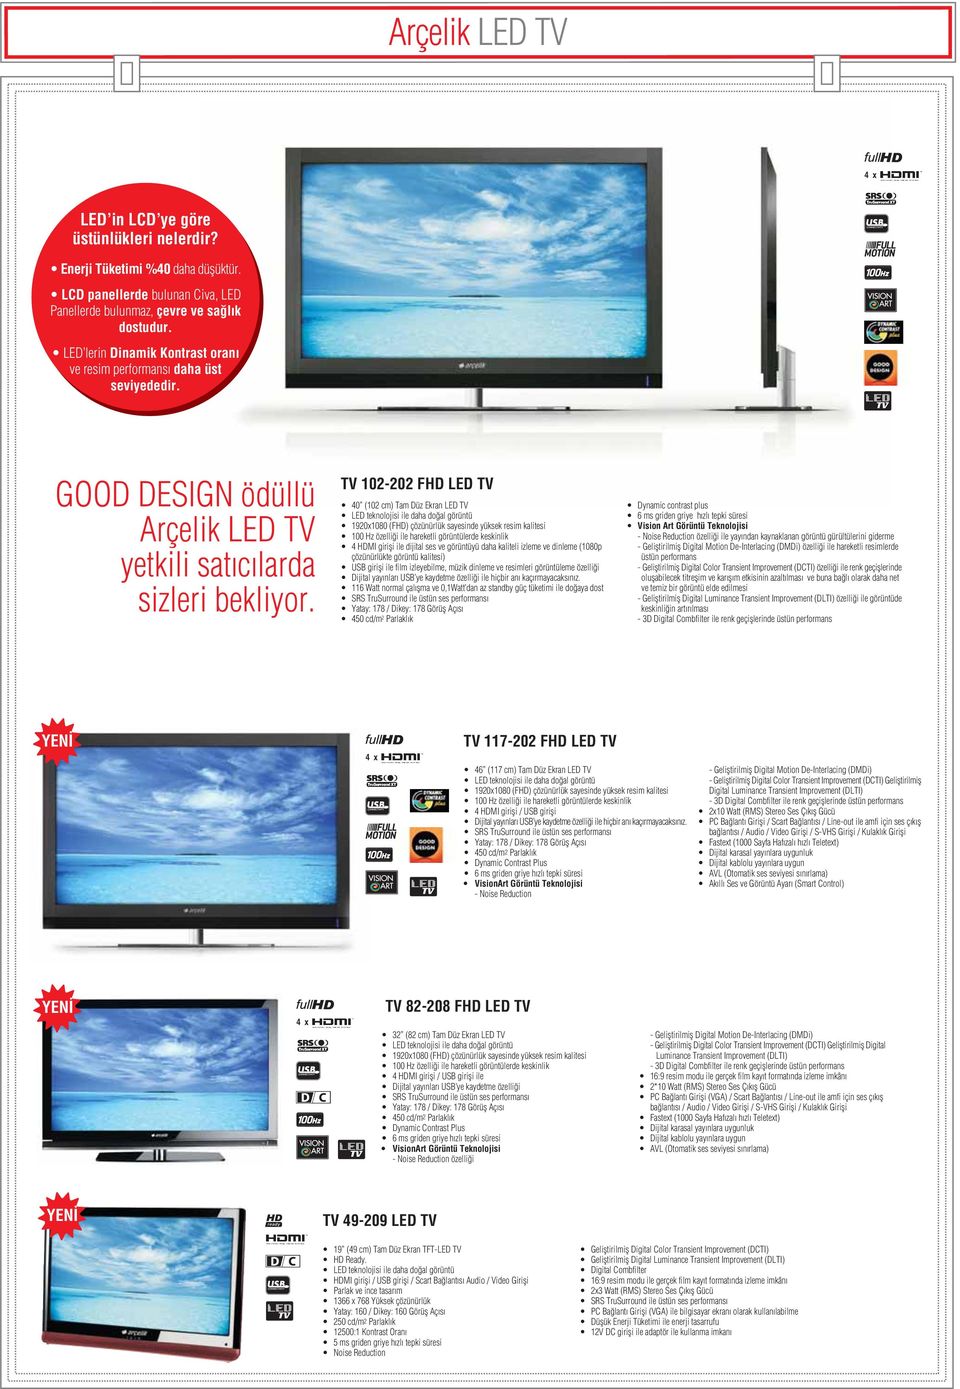 TV 102-202 FHD LED TV 40 (102 cm) Tam Düz Ekran LED TV LED teknolojisi ile daha do al görüntü 1920x1080 (FHD) çözünürlük sayesinde yüksek resim kalitesi 100 Hz özelli i ile hareketli görüntülerde